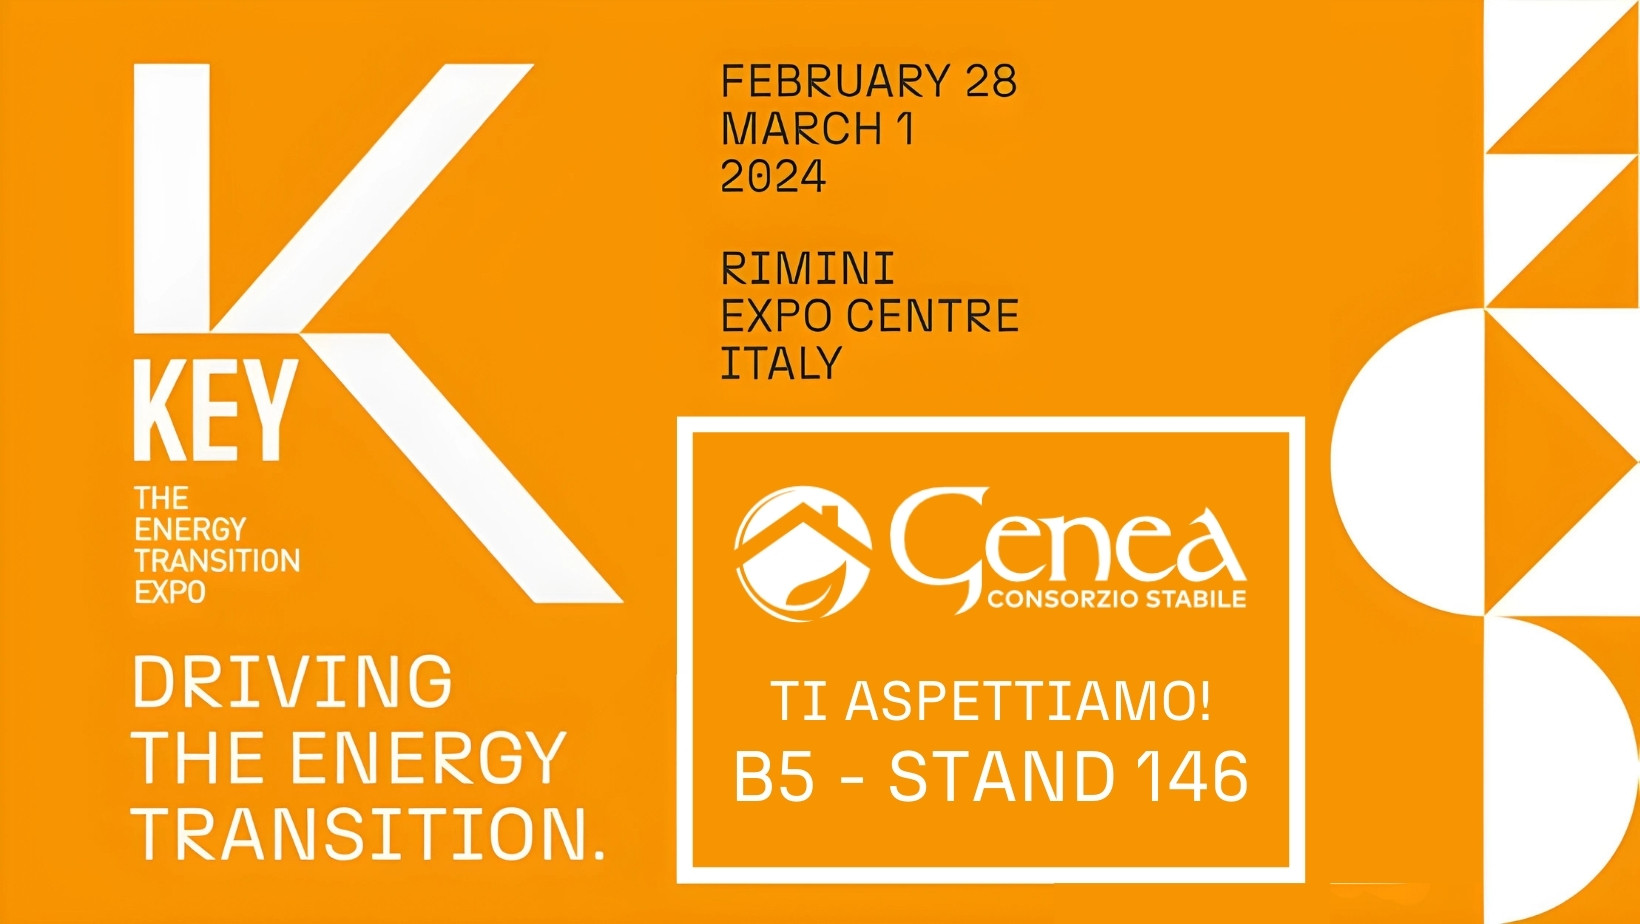 Genea ti aspetta a Rimini dal 28 febbraio al 1° marzo per la fiera KEY 2024